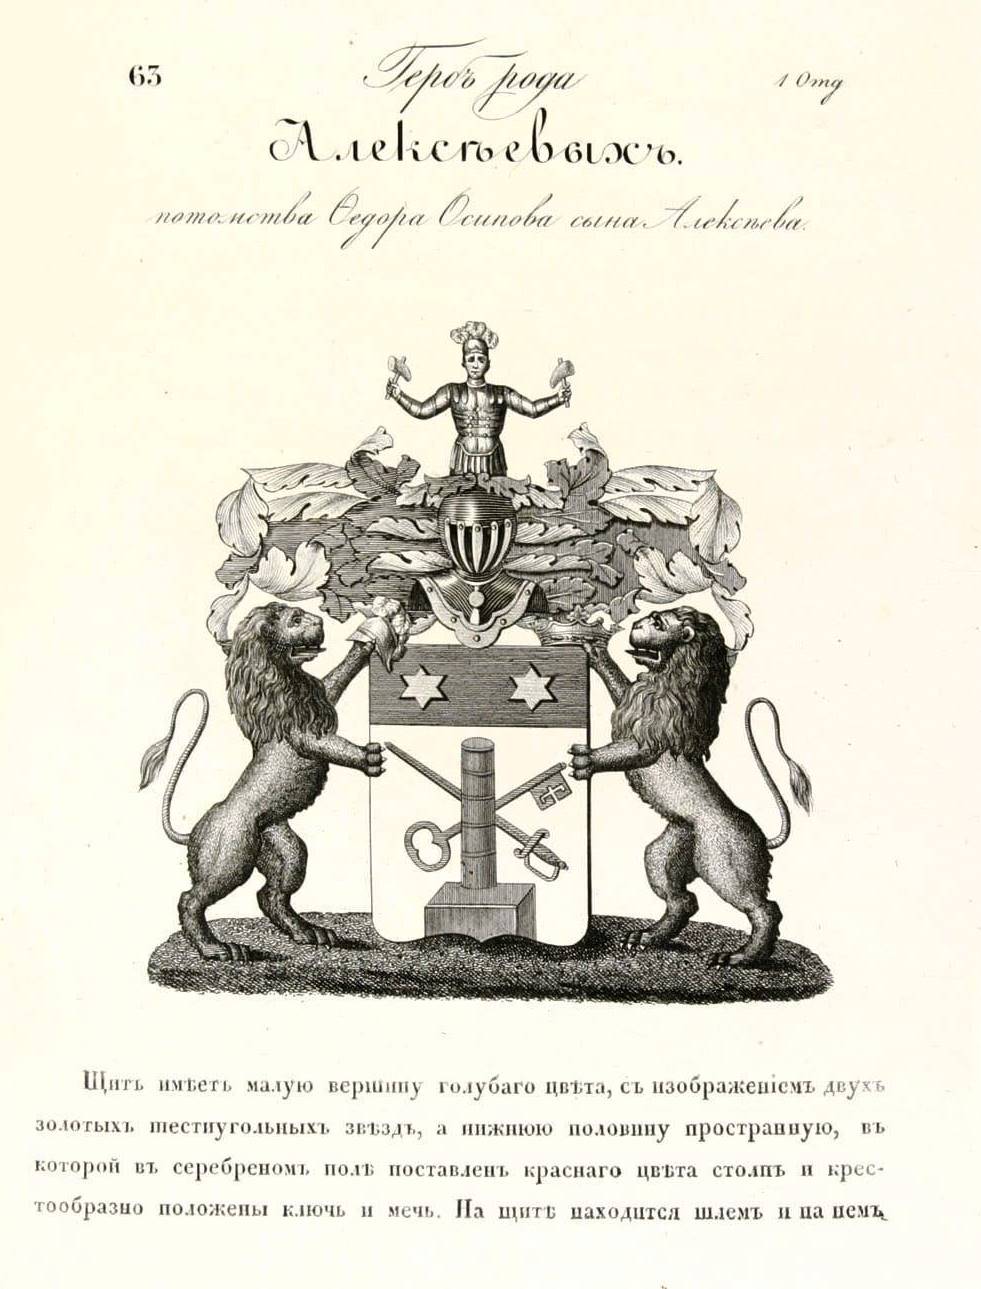  Герб дворян Алексєєвих, затверджений «Жалуваною грамотою» імператора Олександра ІІ